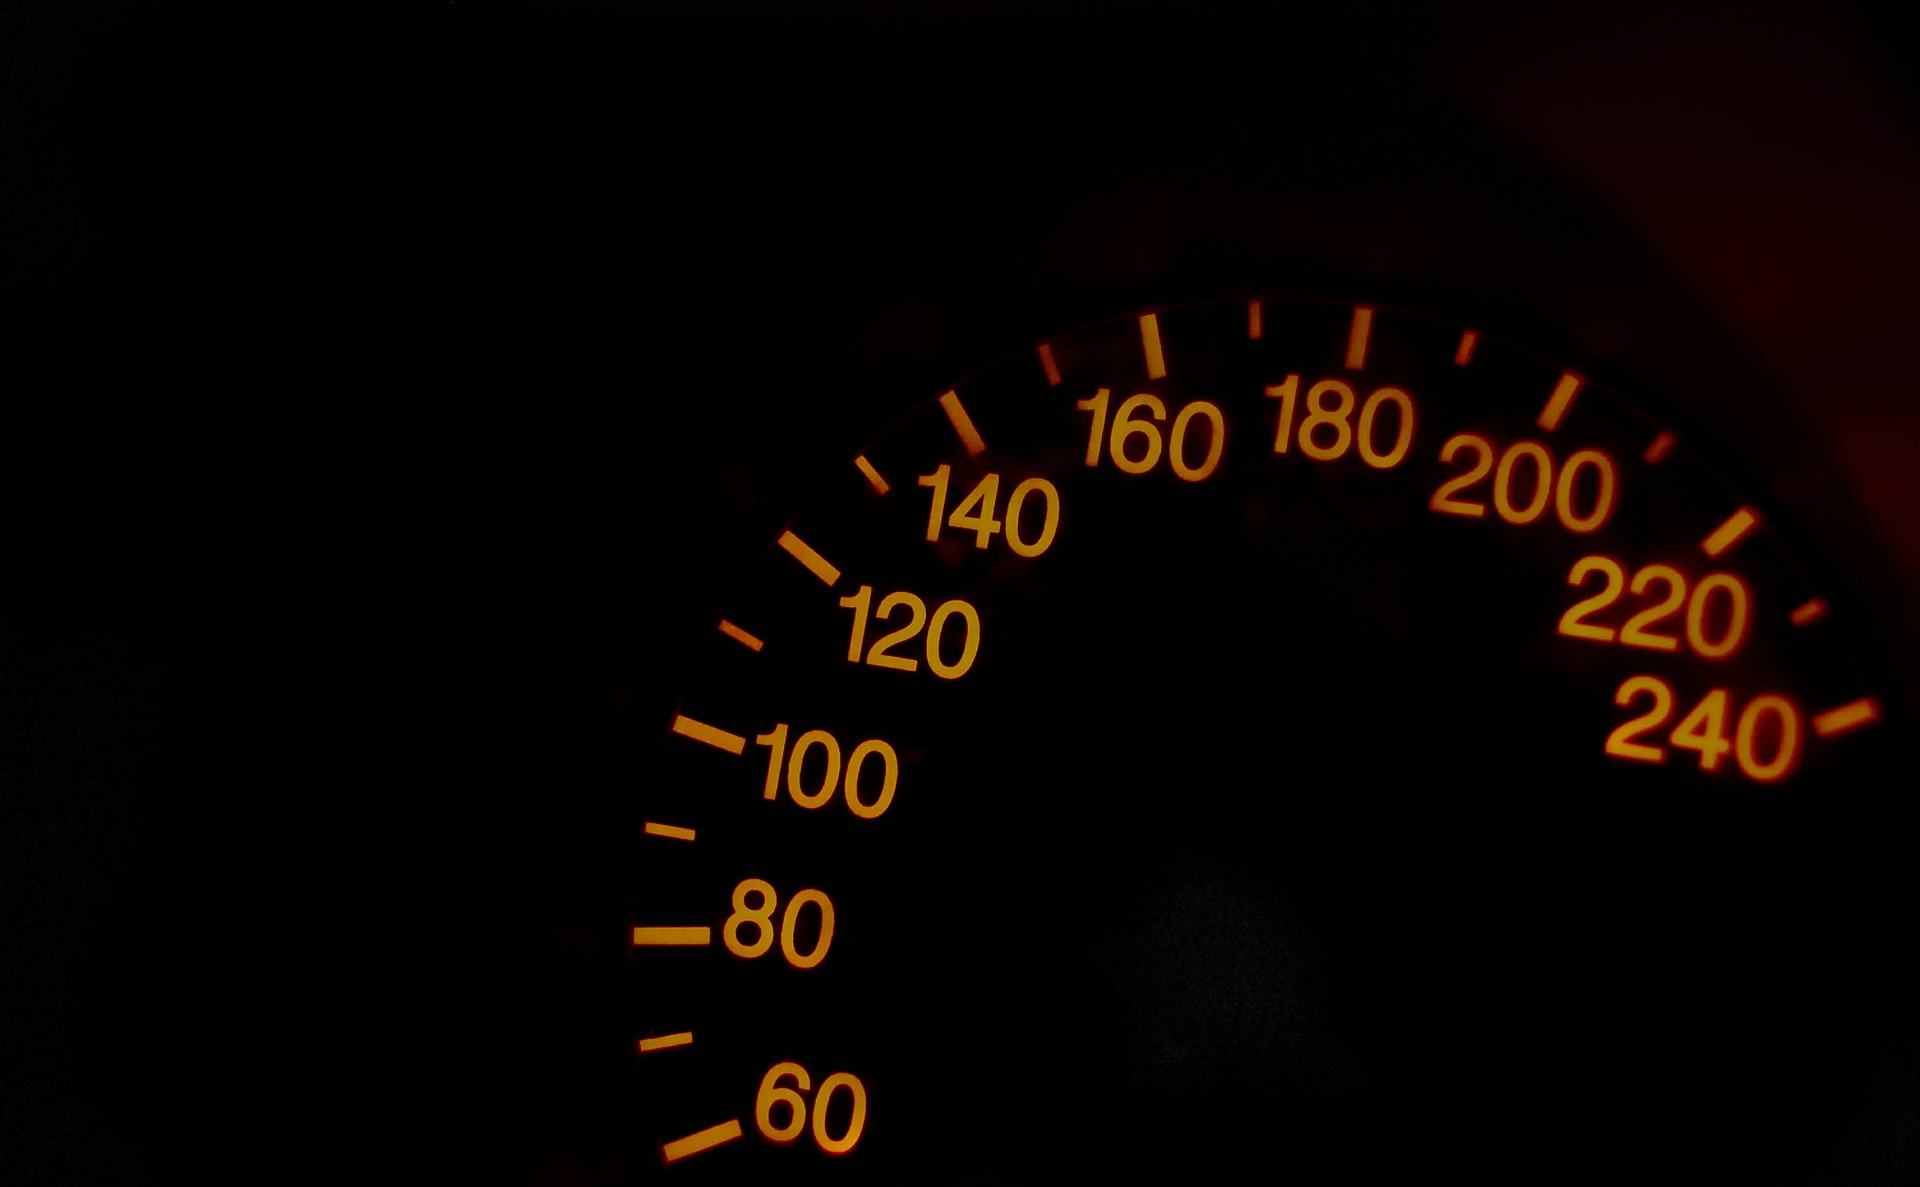  Excesso de velocidade lidera número de multas no paraná